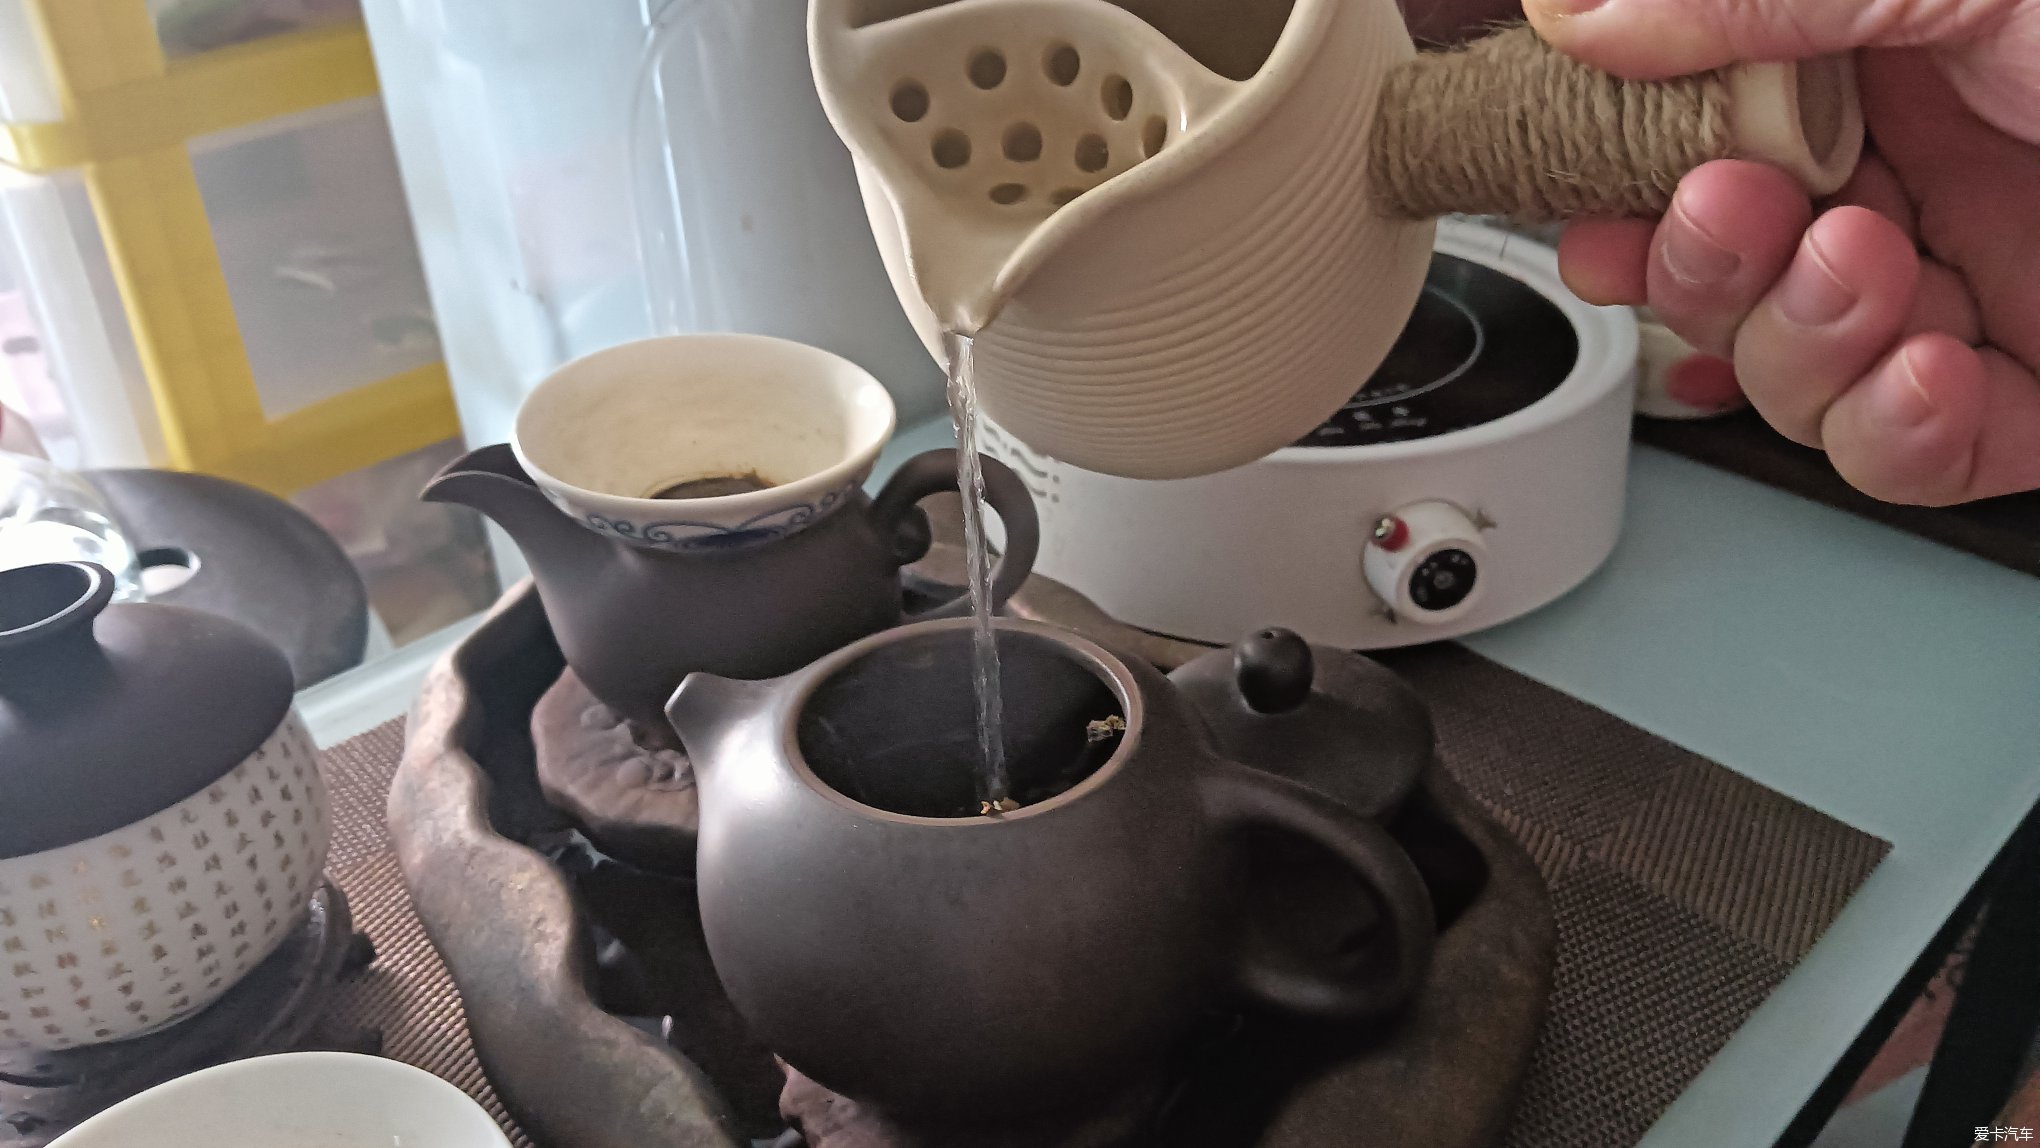 【比拼】每天早上的第一壶茶